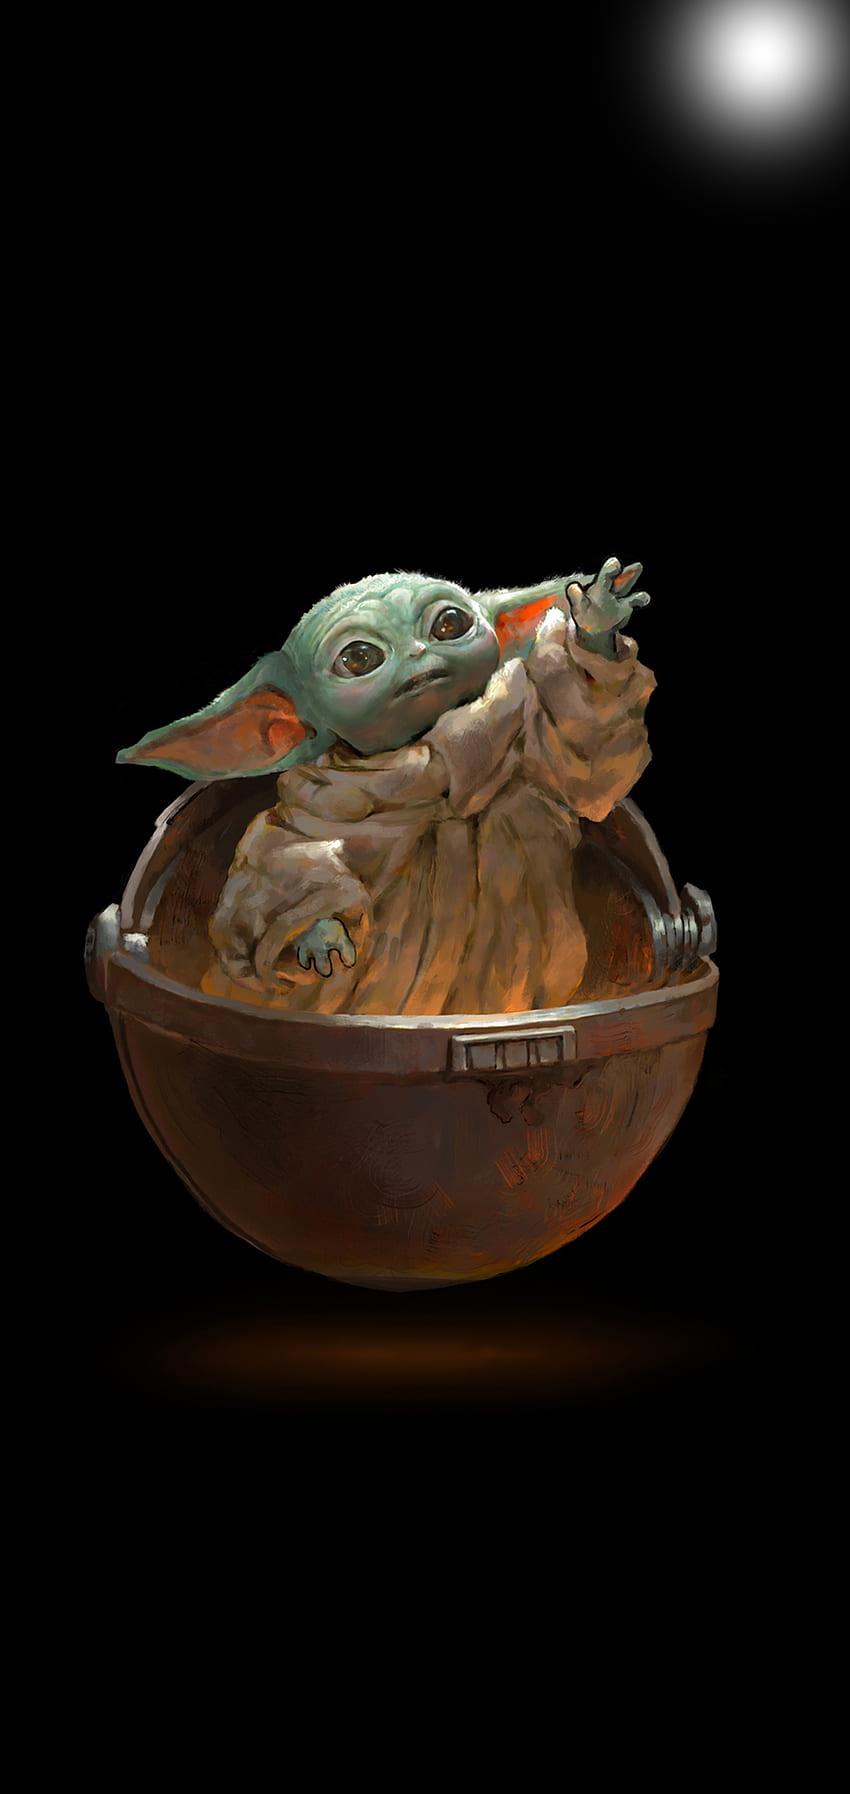 Hình nền Galaxy S10 Baby Yoda – Làm cho di động của bạn trở nên đặc biệt và thu hút hơn với bộ sưu tập hình nền Baby Yoda. Tuyệt vời cho các fan của Star Wars, bộ sưu tập này sẽ khiến bạn cảm thấy rực rỡ và mang lại cảm giác chân thực nhất về vũ trụ Star Wars.